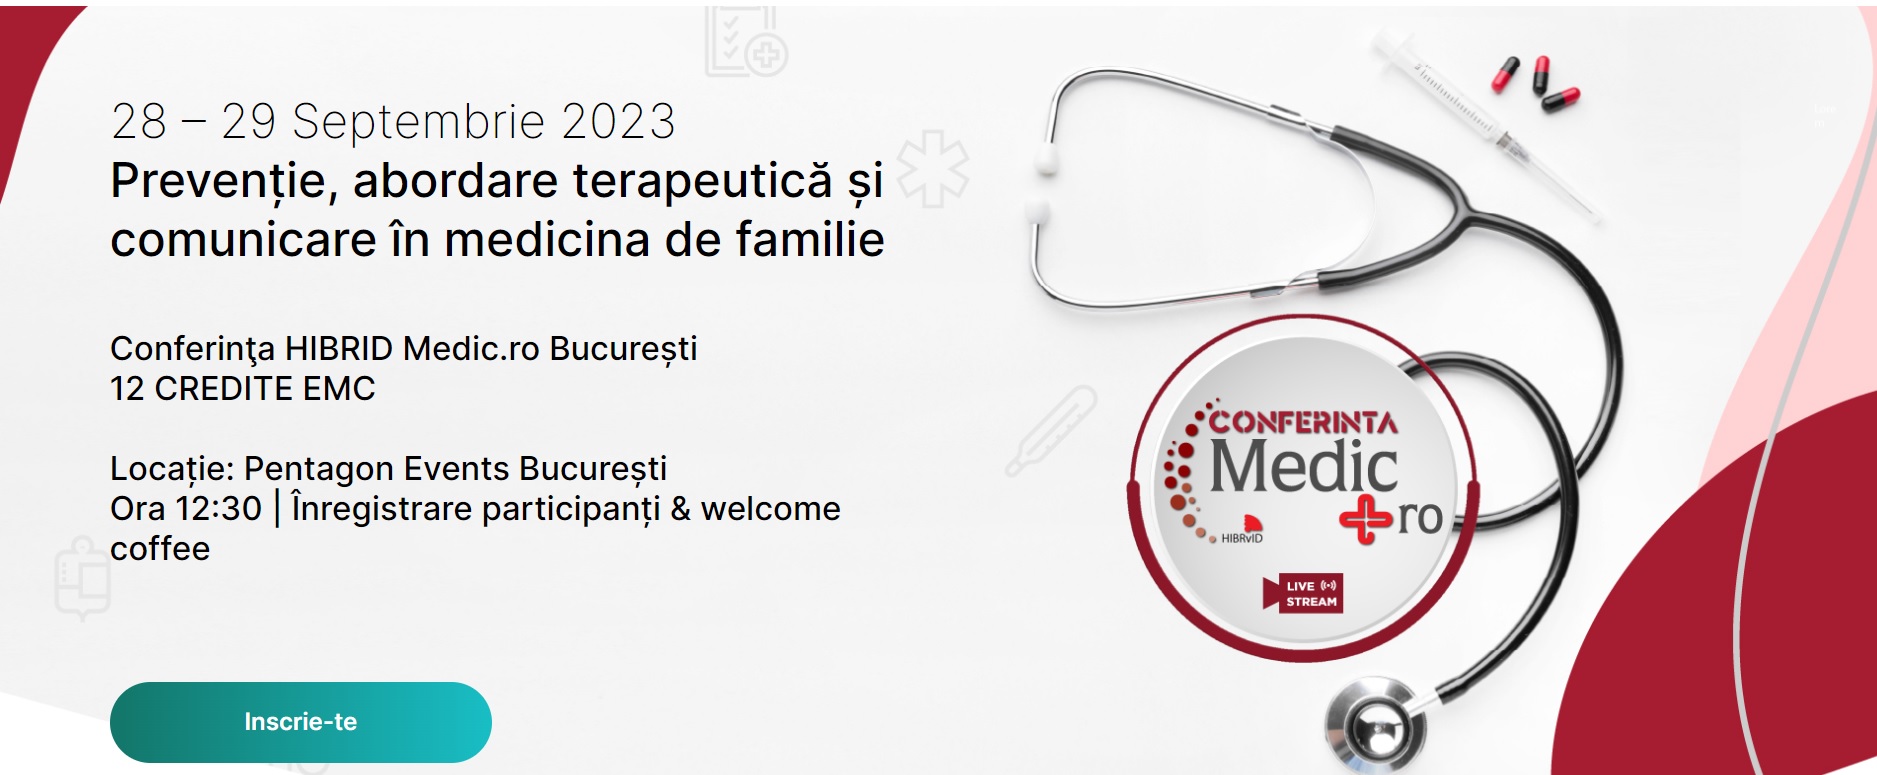 Conferința Medic.ro București, desfășurată pe 28 și 29 septembrie la Pentagon Events